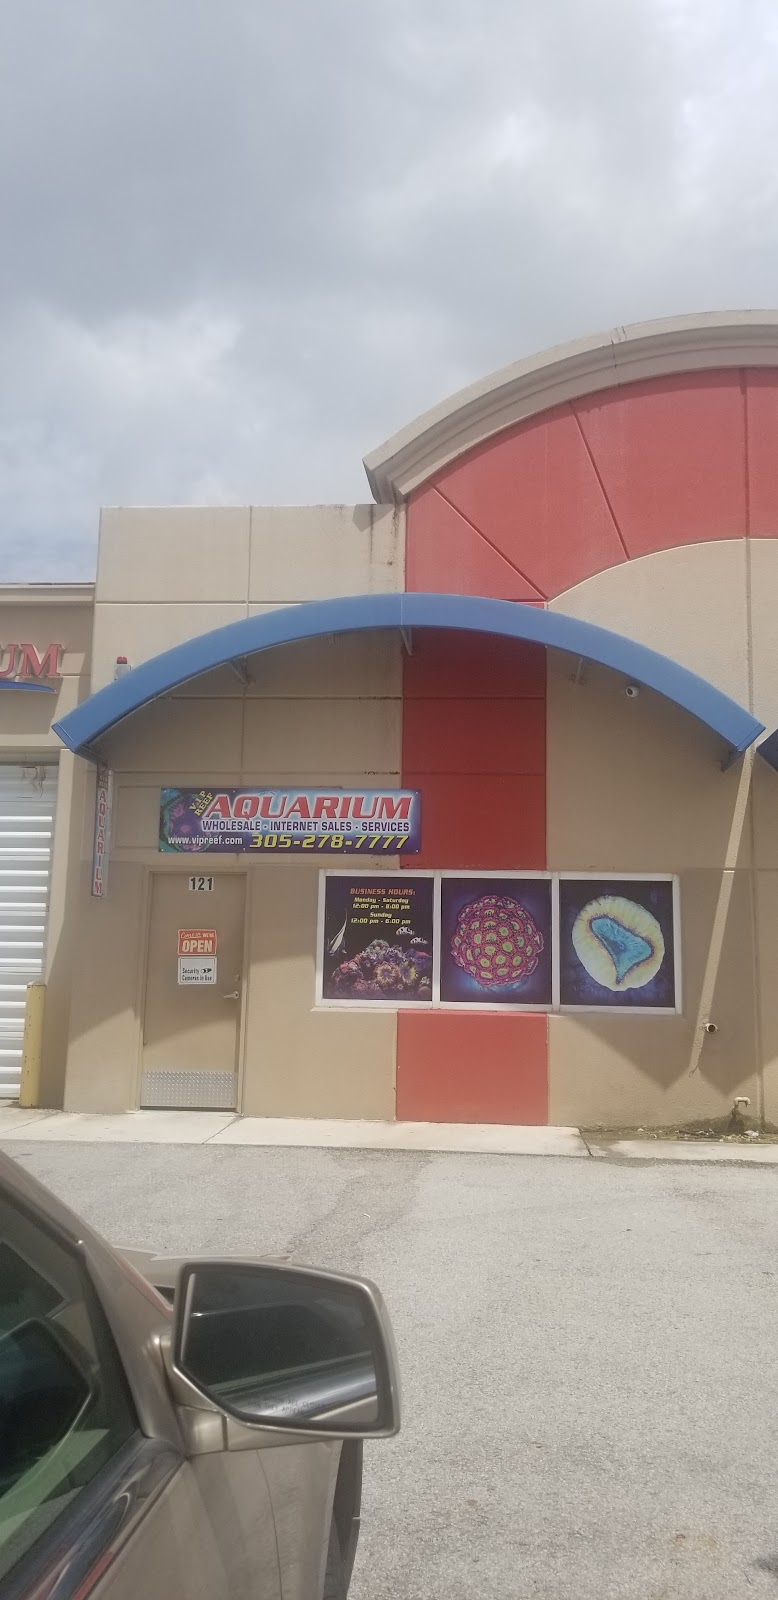 VIP Reef Aquarium | 16300 SW 137th Ave #121, Miami, FL 33177 | Phone: (305) 278-7777